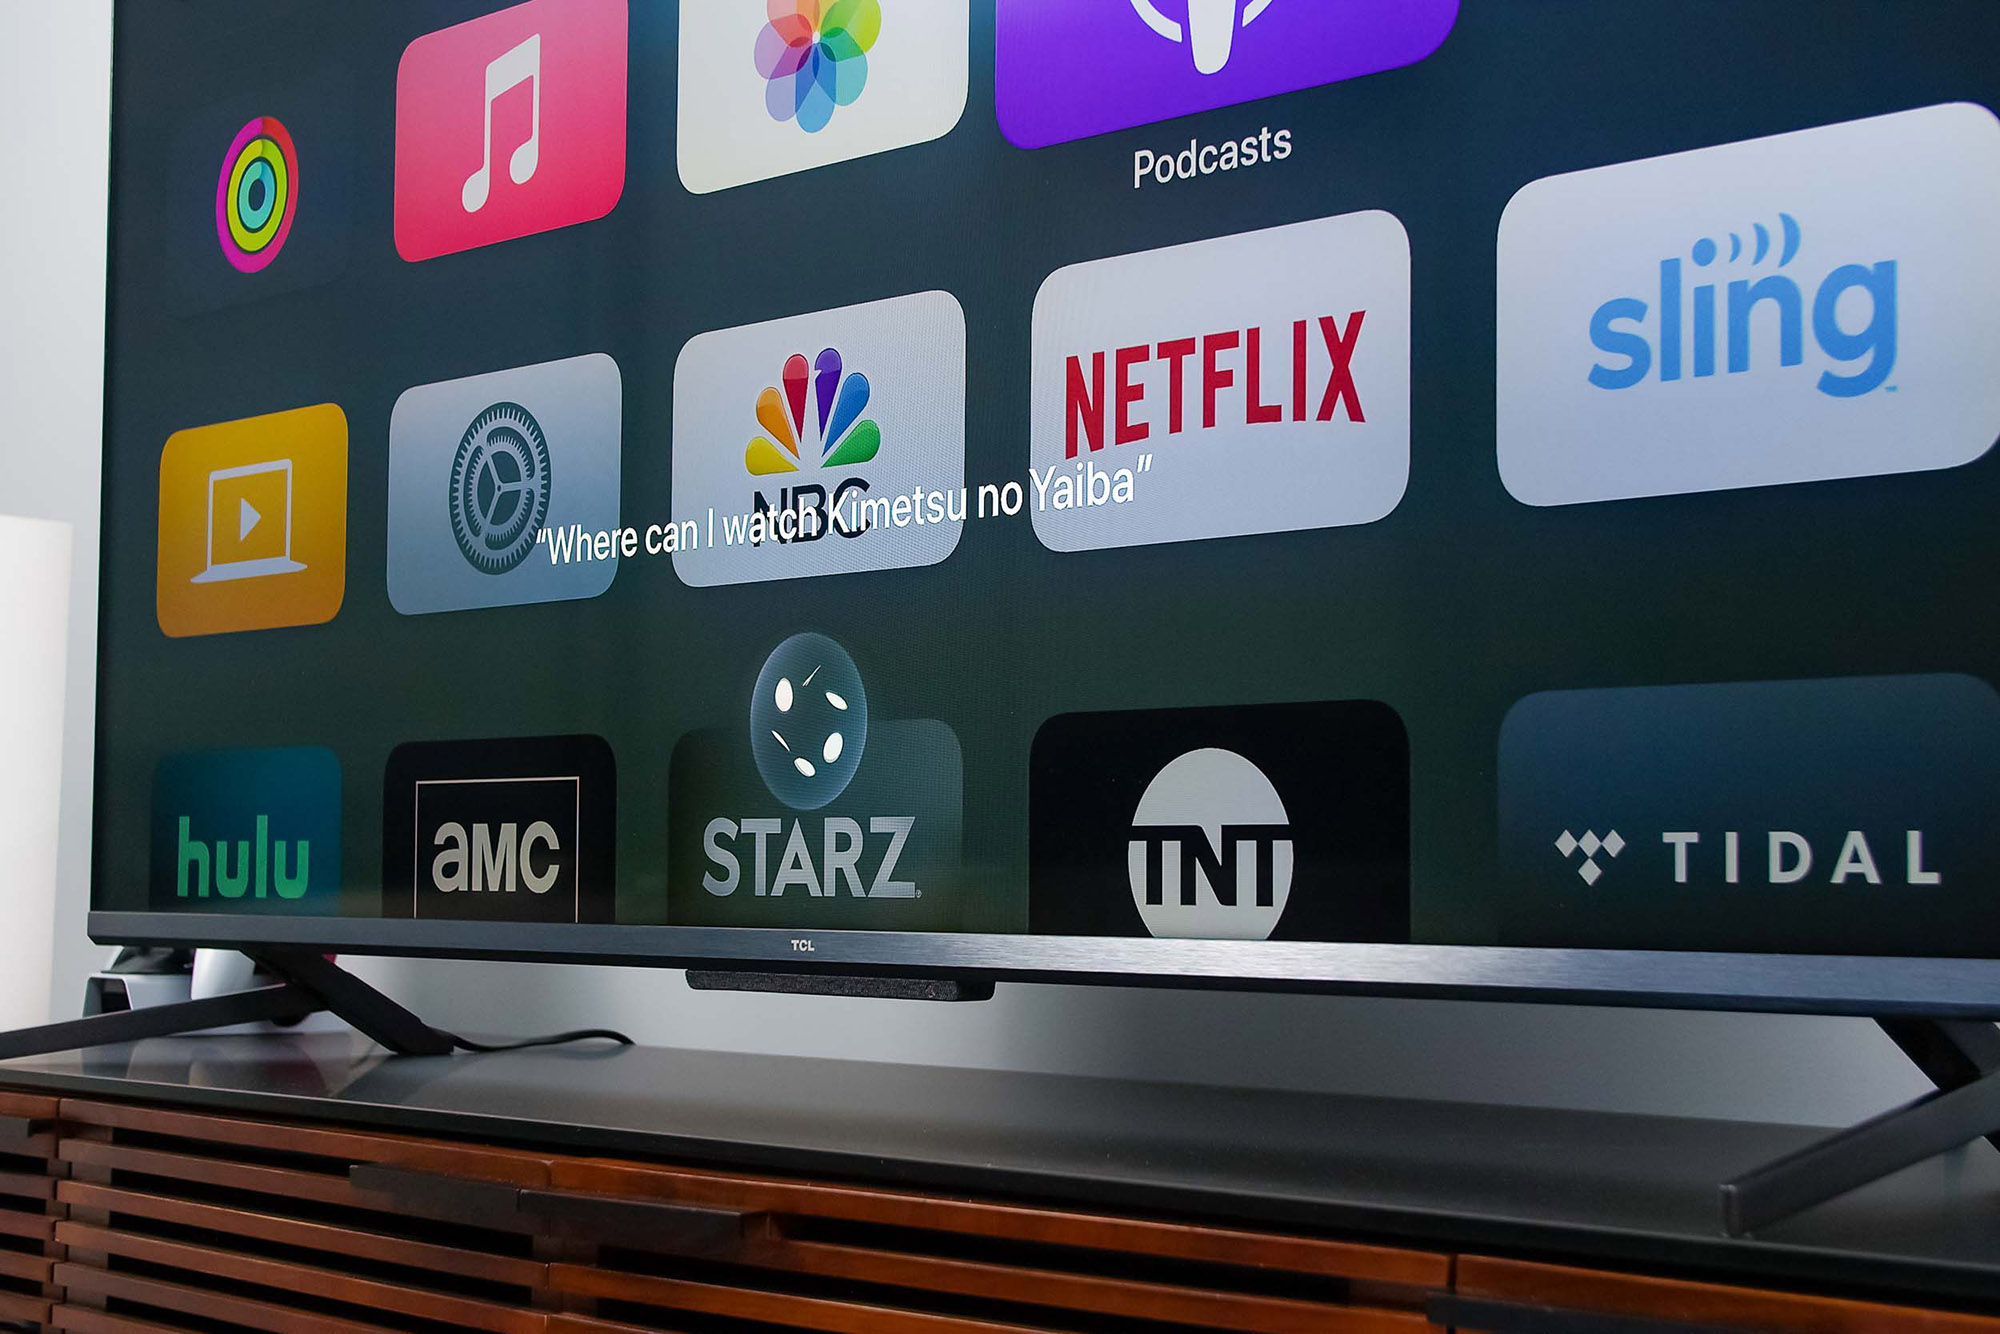 کنترل صوتی Apple 4K TV برای جستجوی یک برنامه تلویزیونی استفاده می شود.